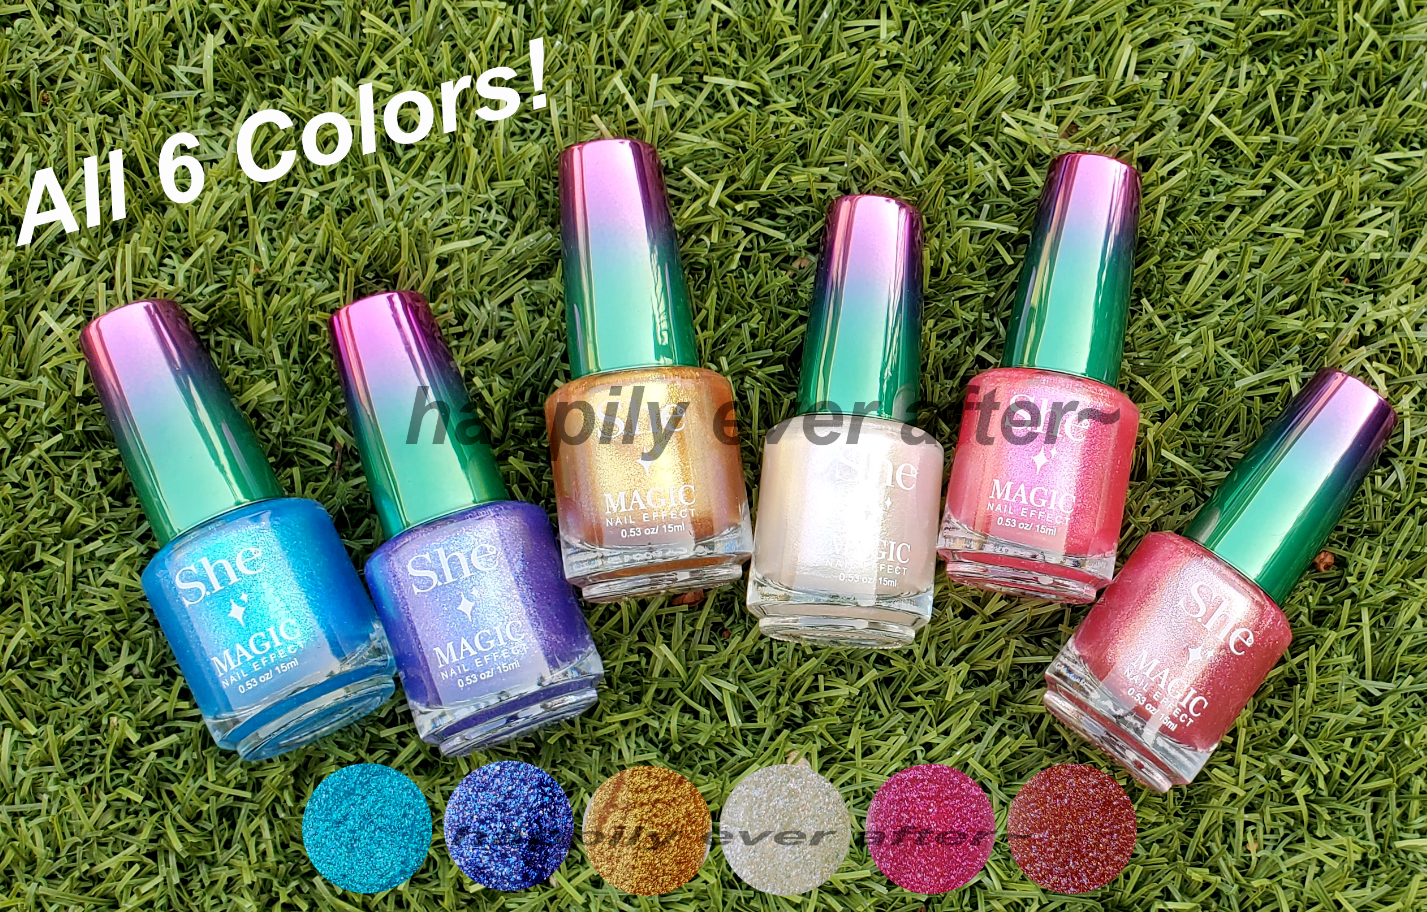  Magic Nail Effect Nail Polish Set - All 6 Colors, Glitter Nail, US  SELLER | eBay